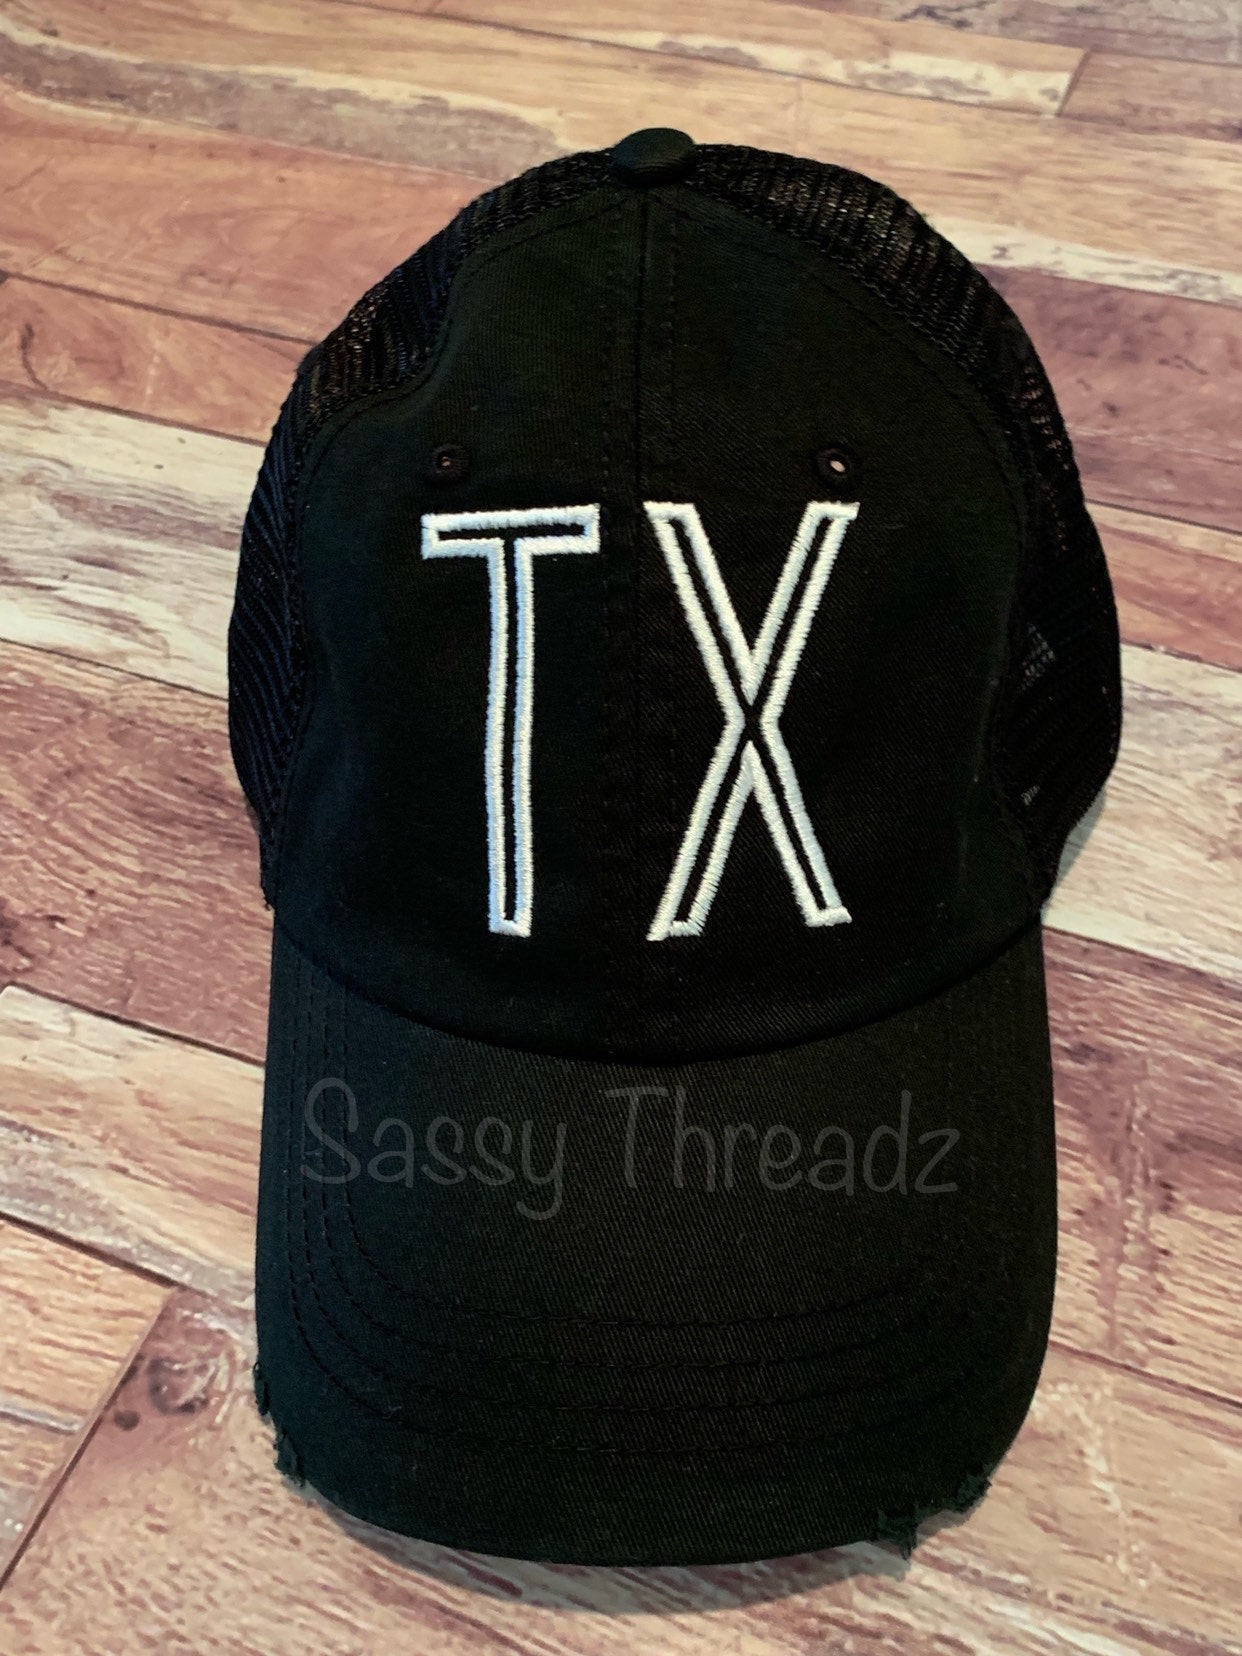 TX Texas Embroidered Trucker Hat - Sassy Threadz